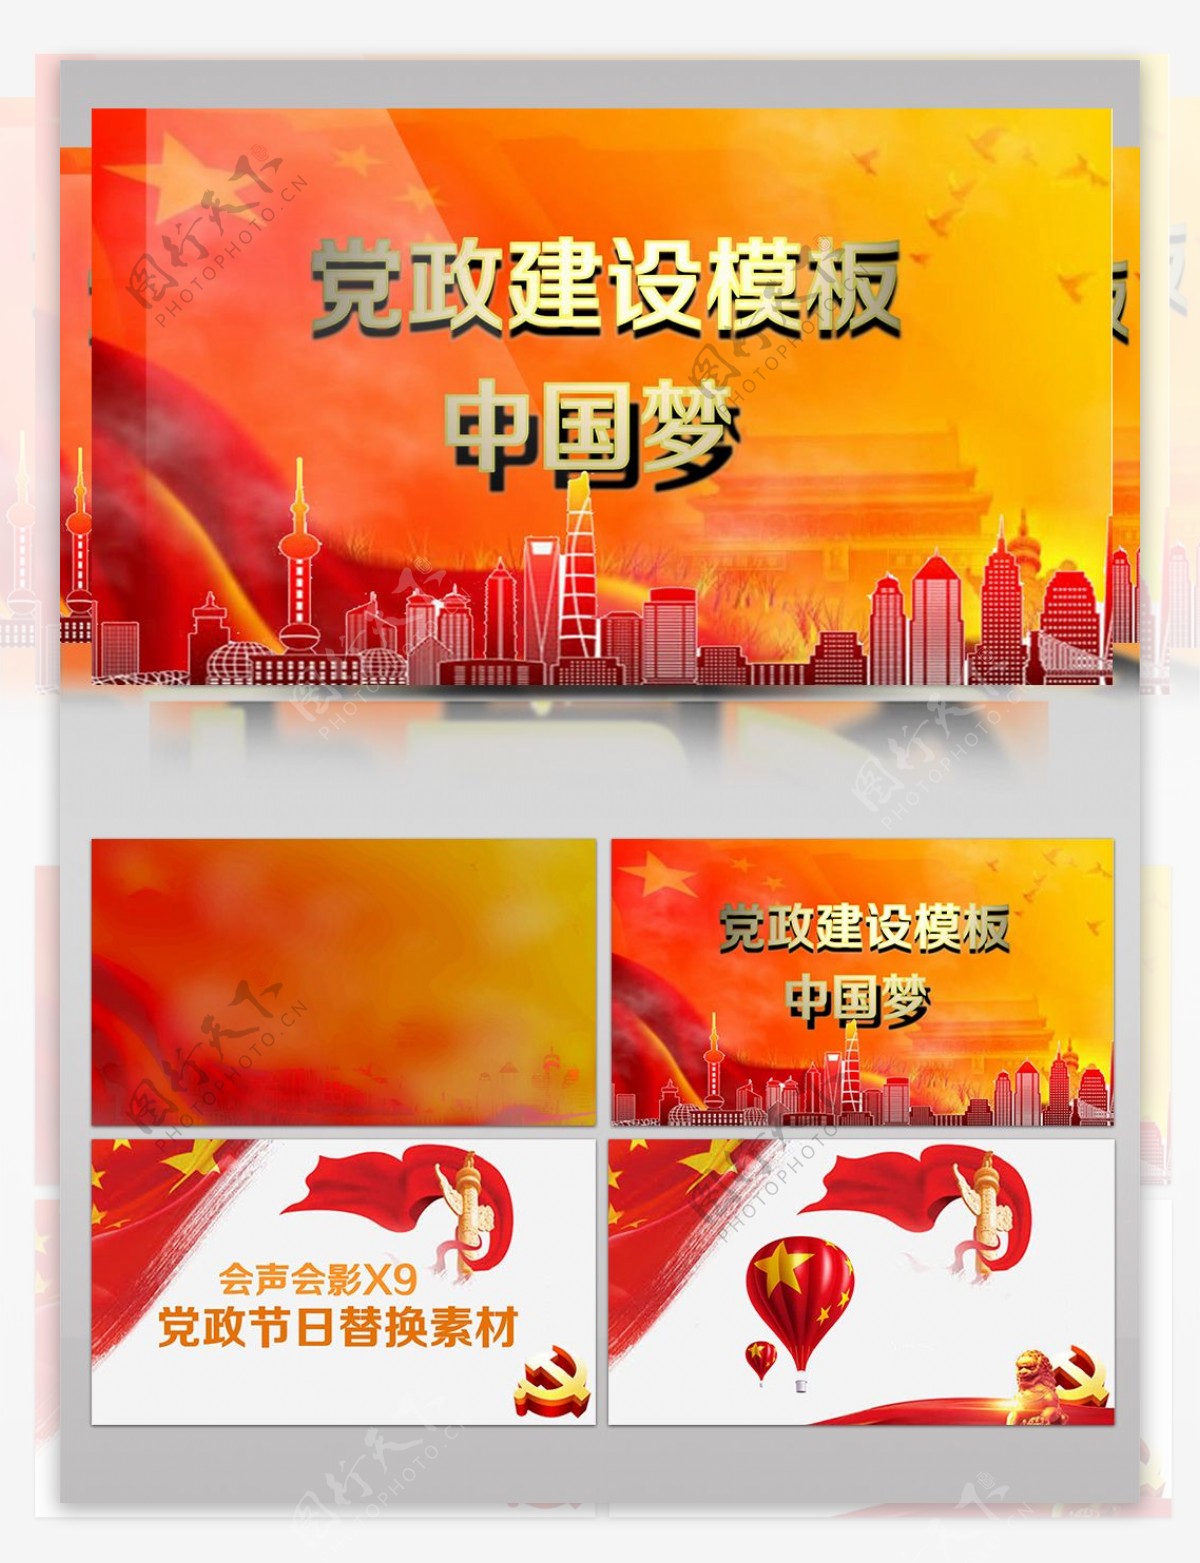 党政建设节日中国梦红旗气球城市五星素材